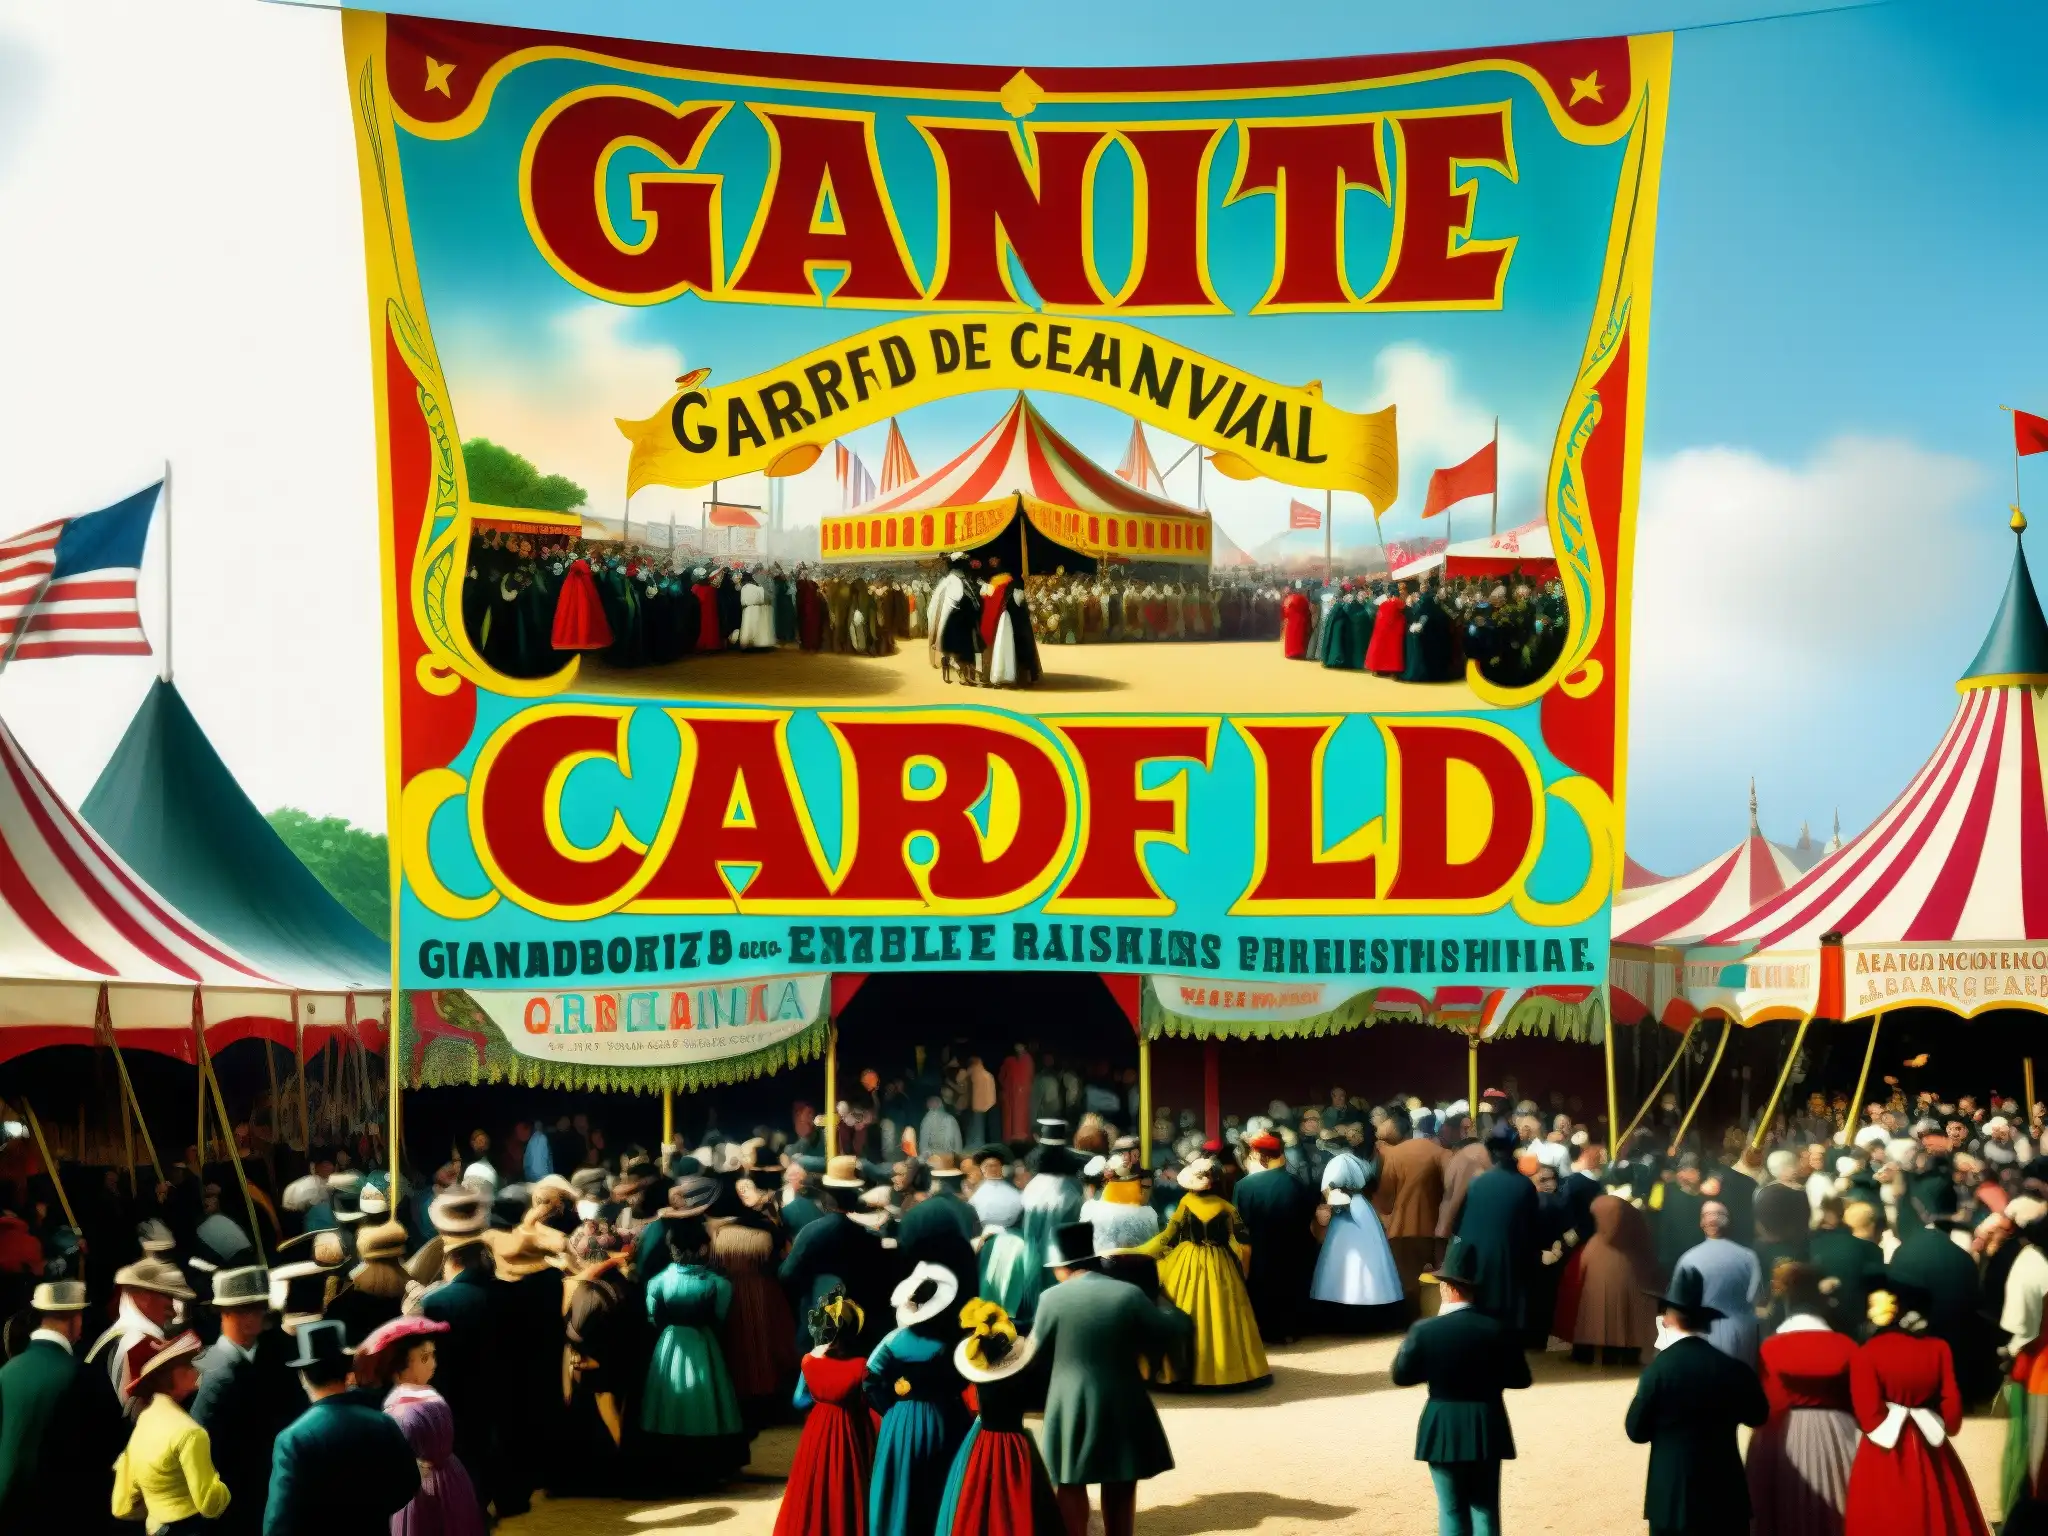 Una fotografía detallada de un bullicioso carnaval del siglo XIX en América con un anuncio del 'Gigante de Cardiff'